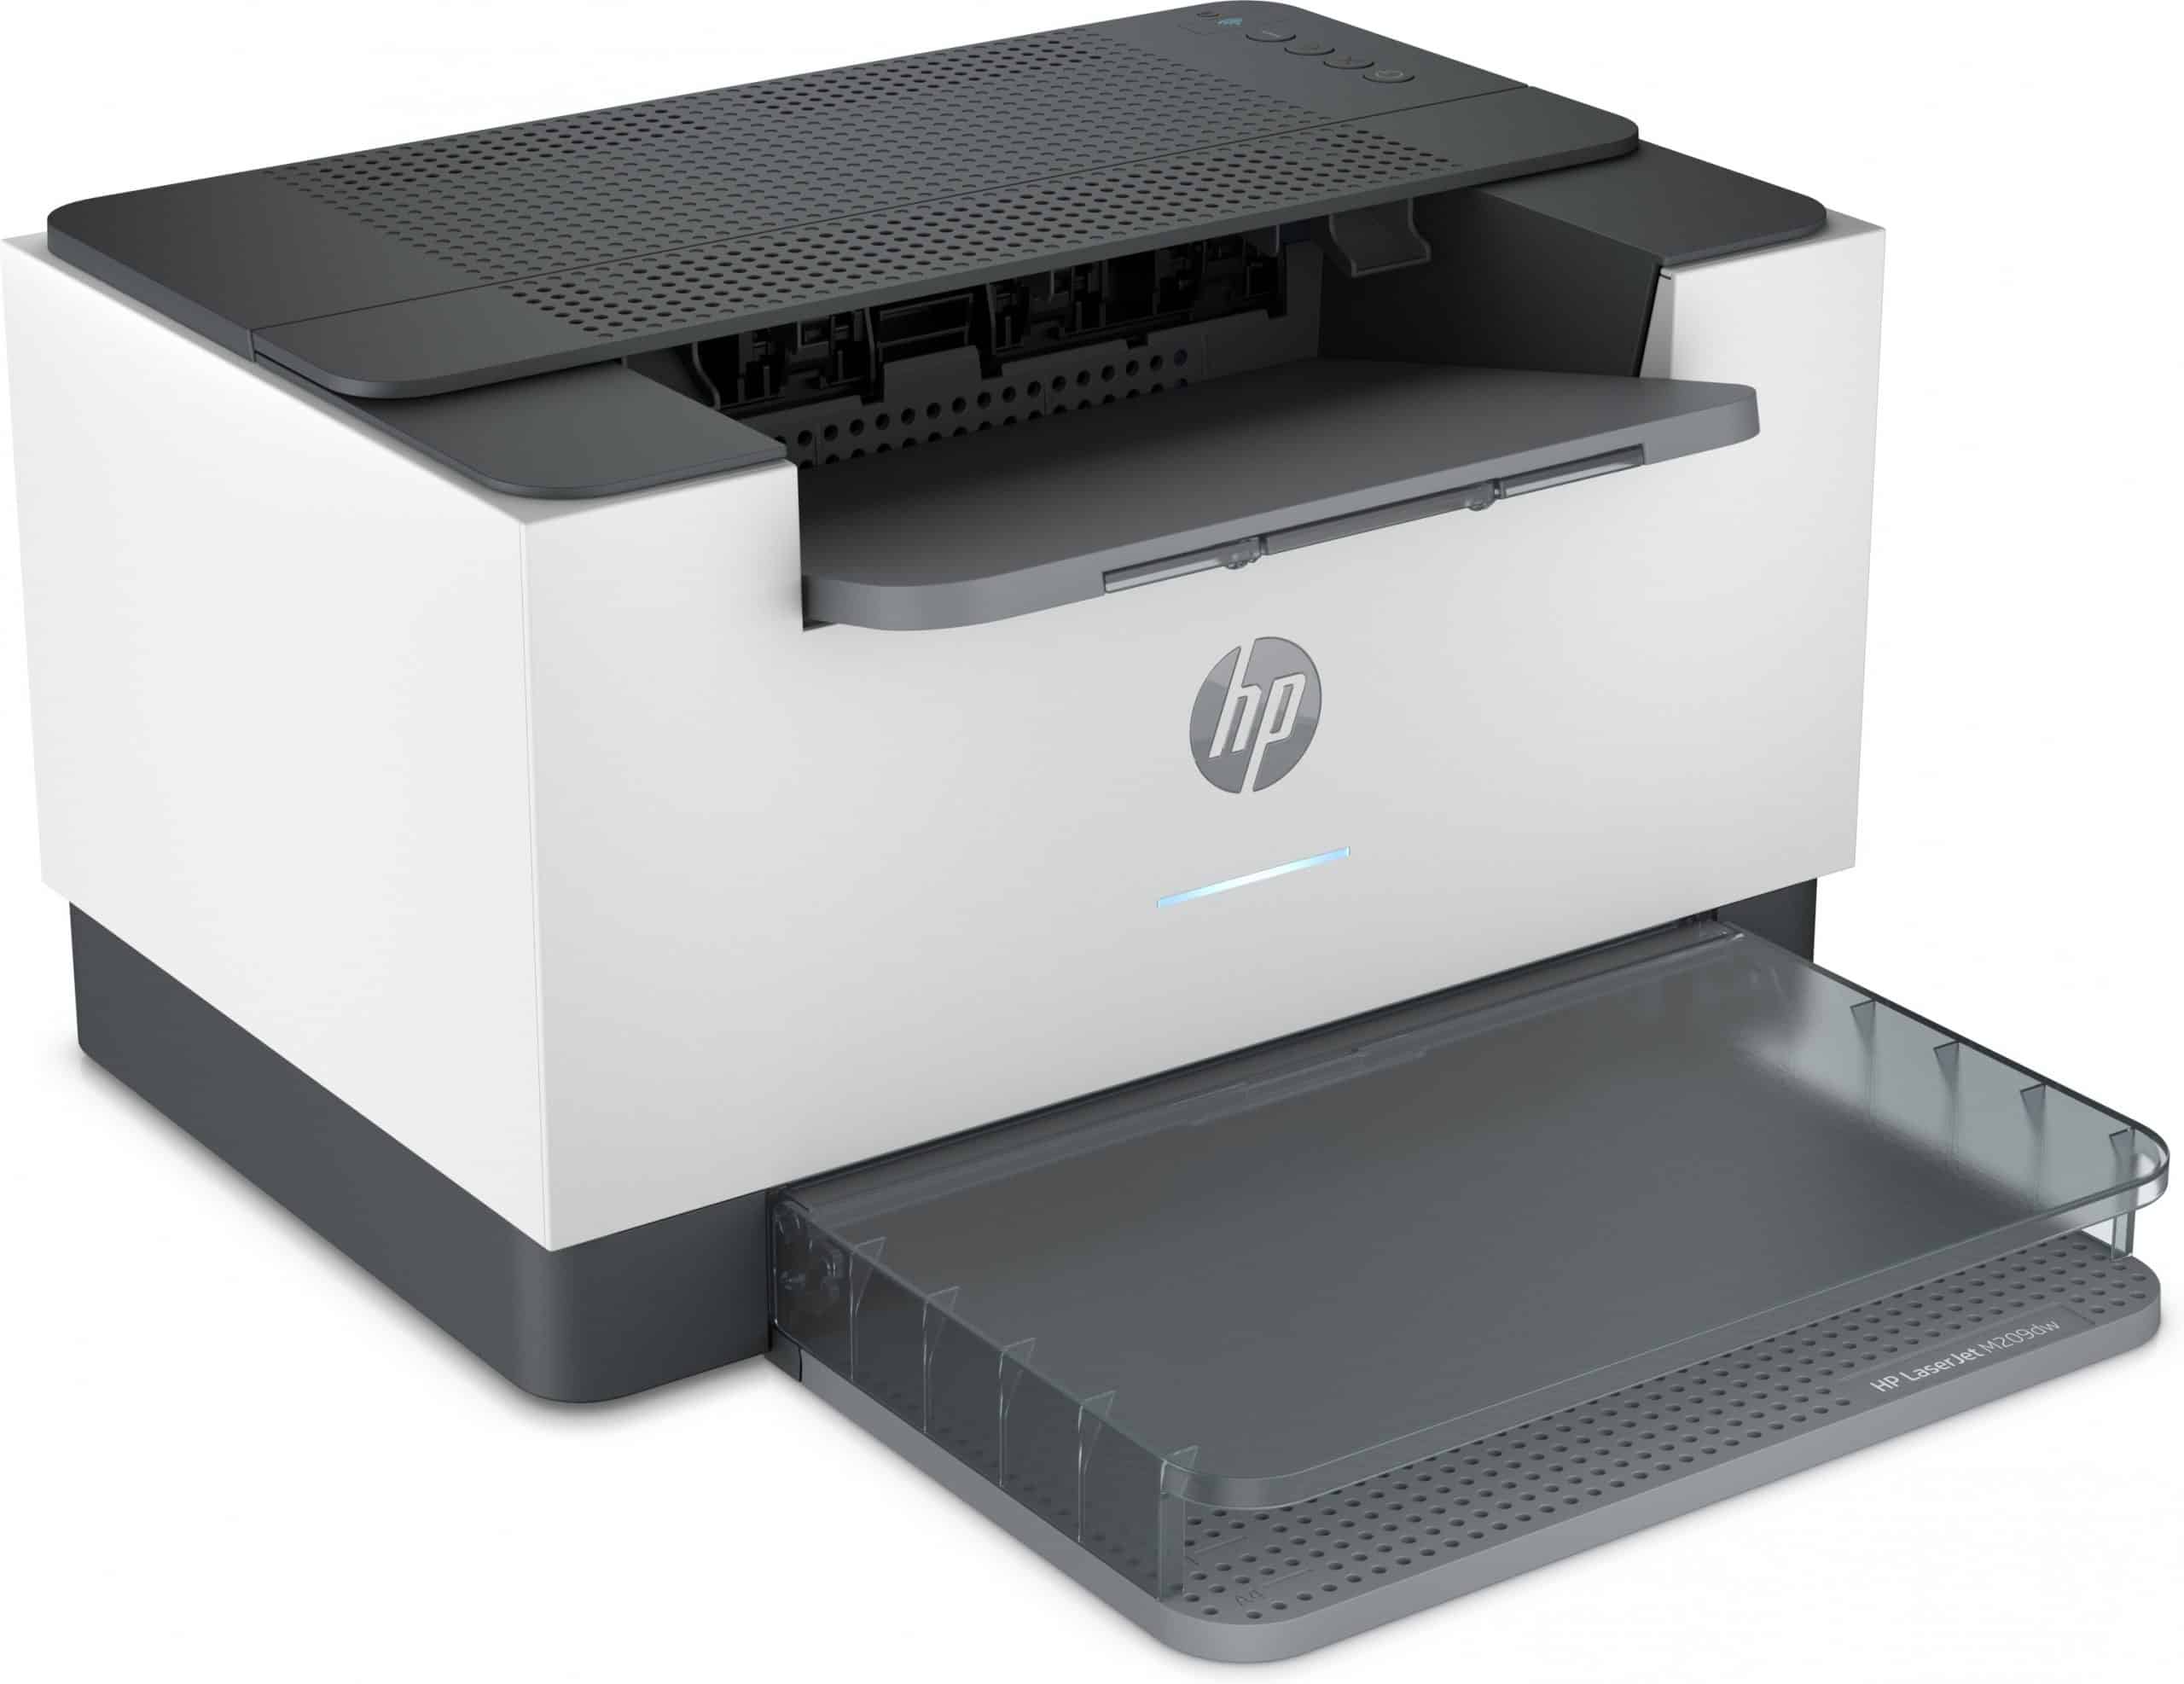 HP M209dwe A4 Monochrom-Laserdrucker 600 x 600 Dpi 18 Seiten pro Minute Ethernet Automatischer Duplex-WLAN NEU!